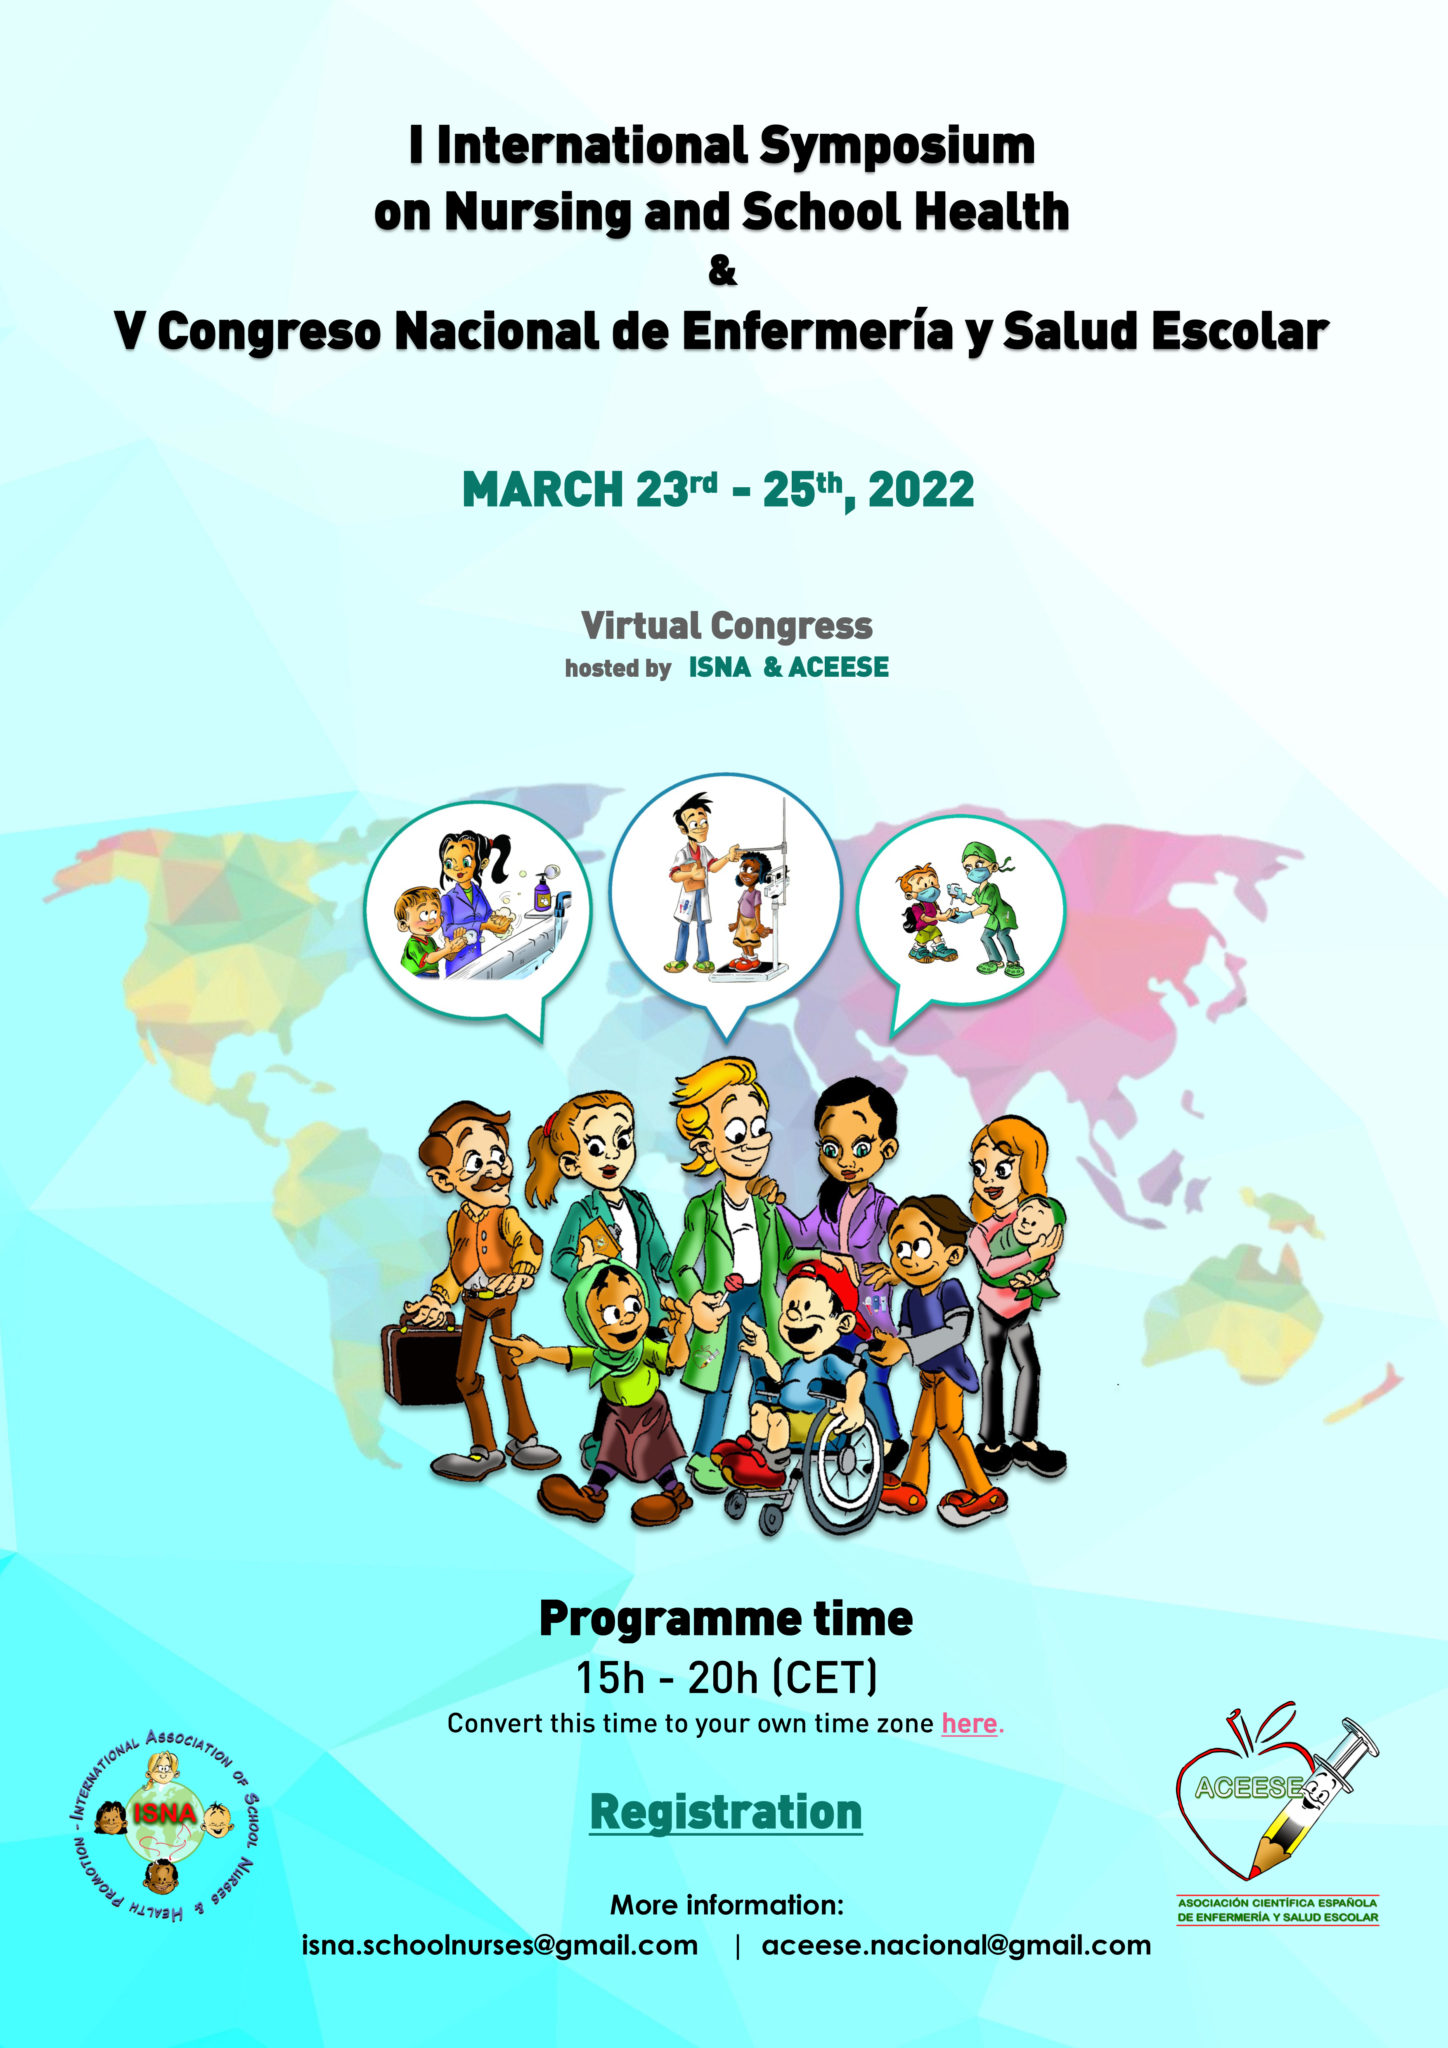 I International Symposium & V Congreso Nacional de Enfermería y Salud Escolar @ Online